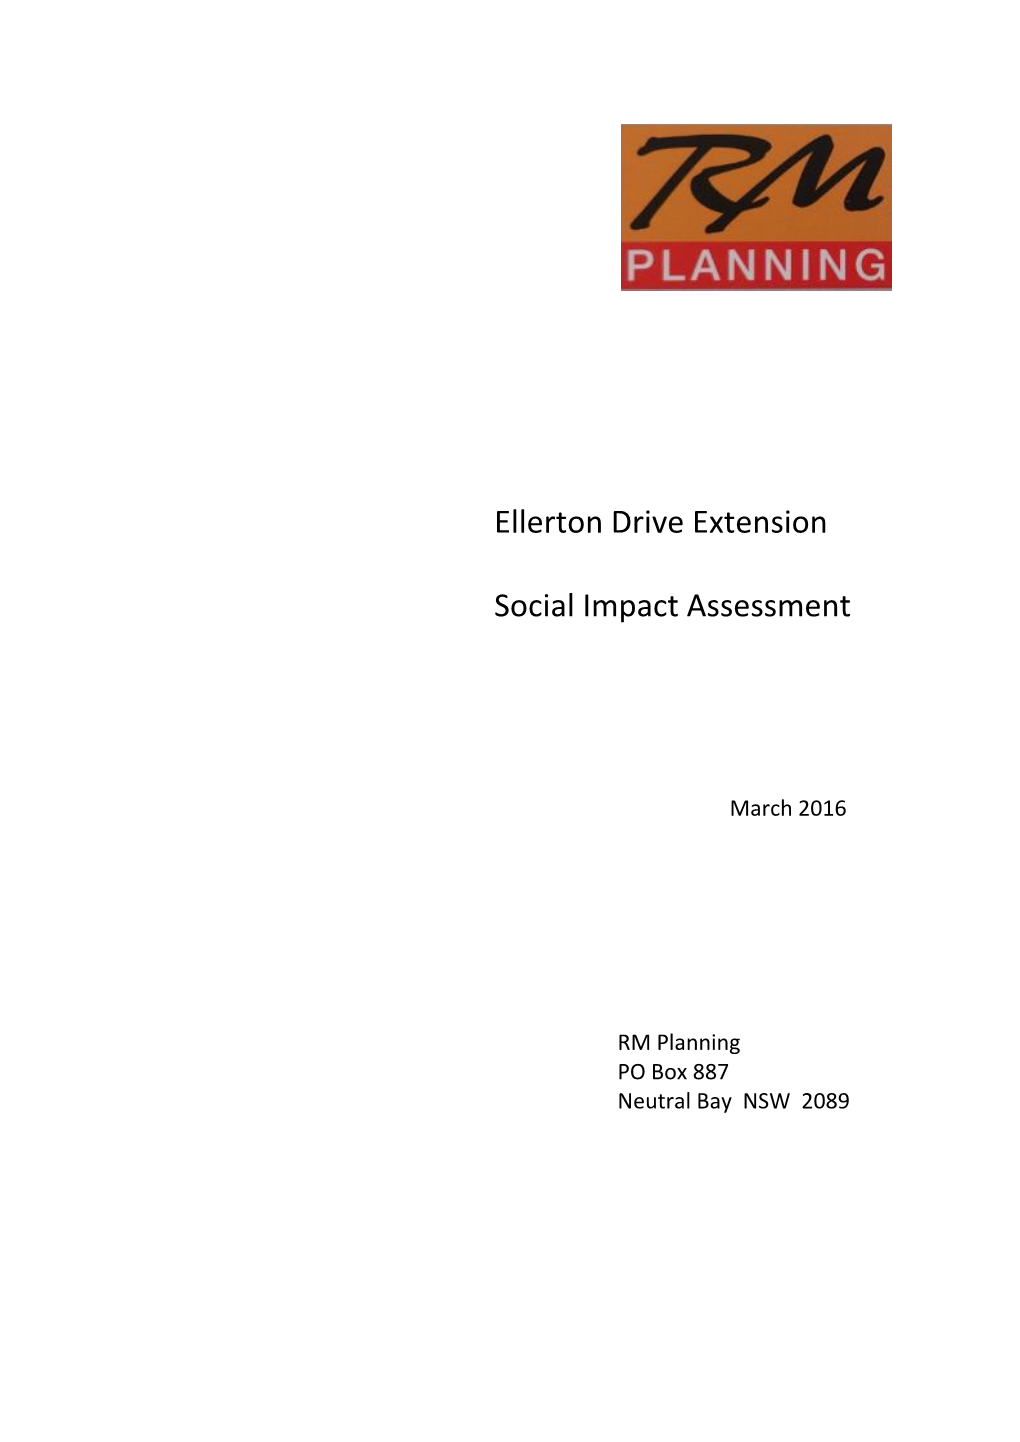 Ellerton Drive Extension Social Impact Assessment